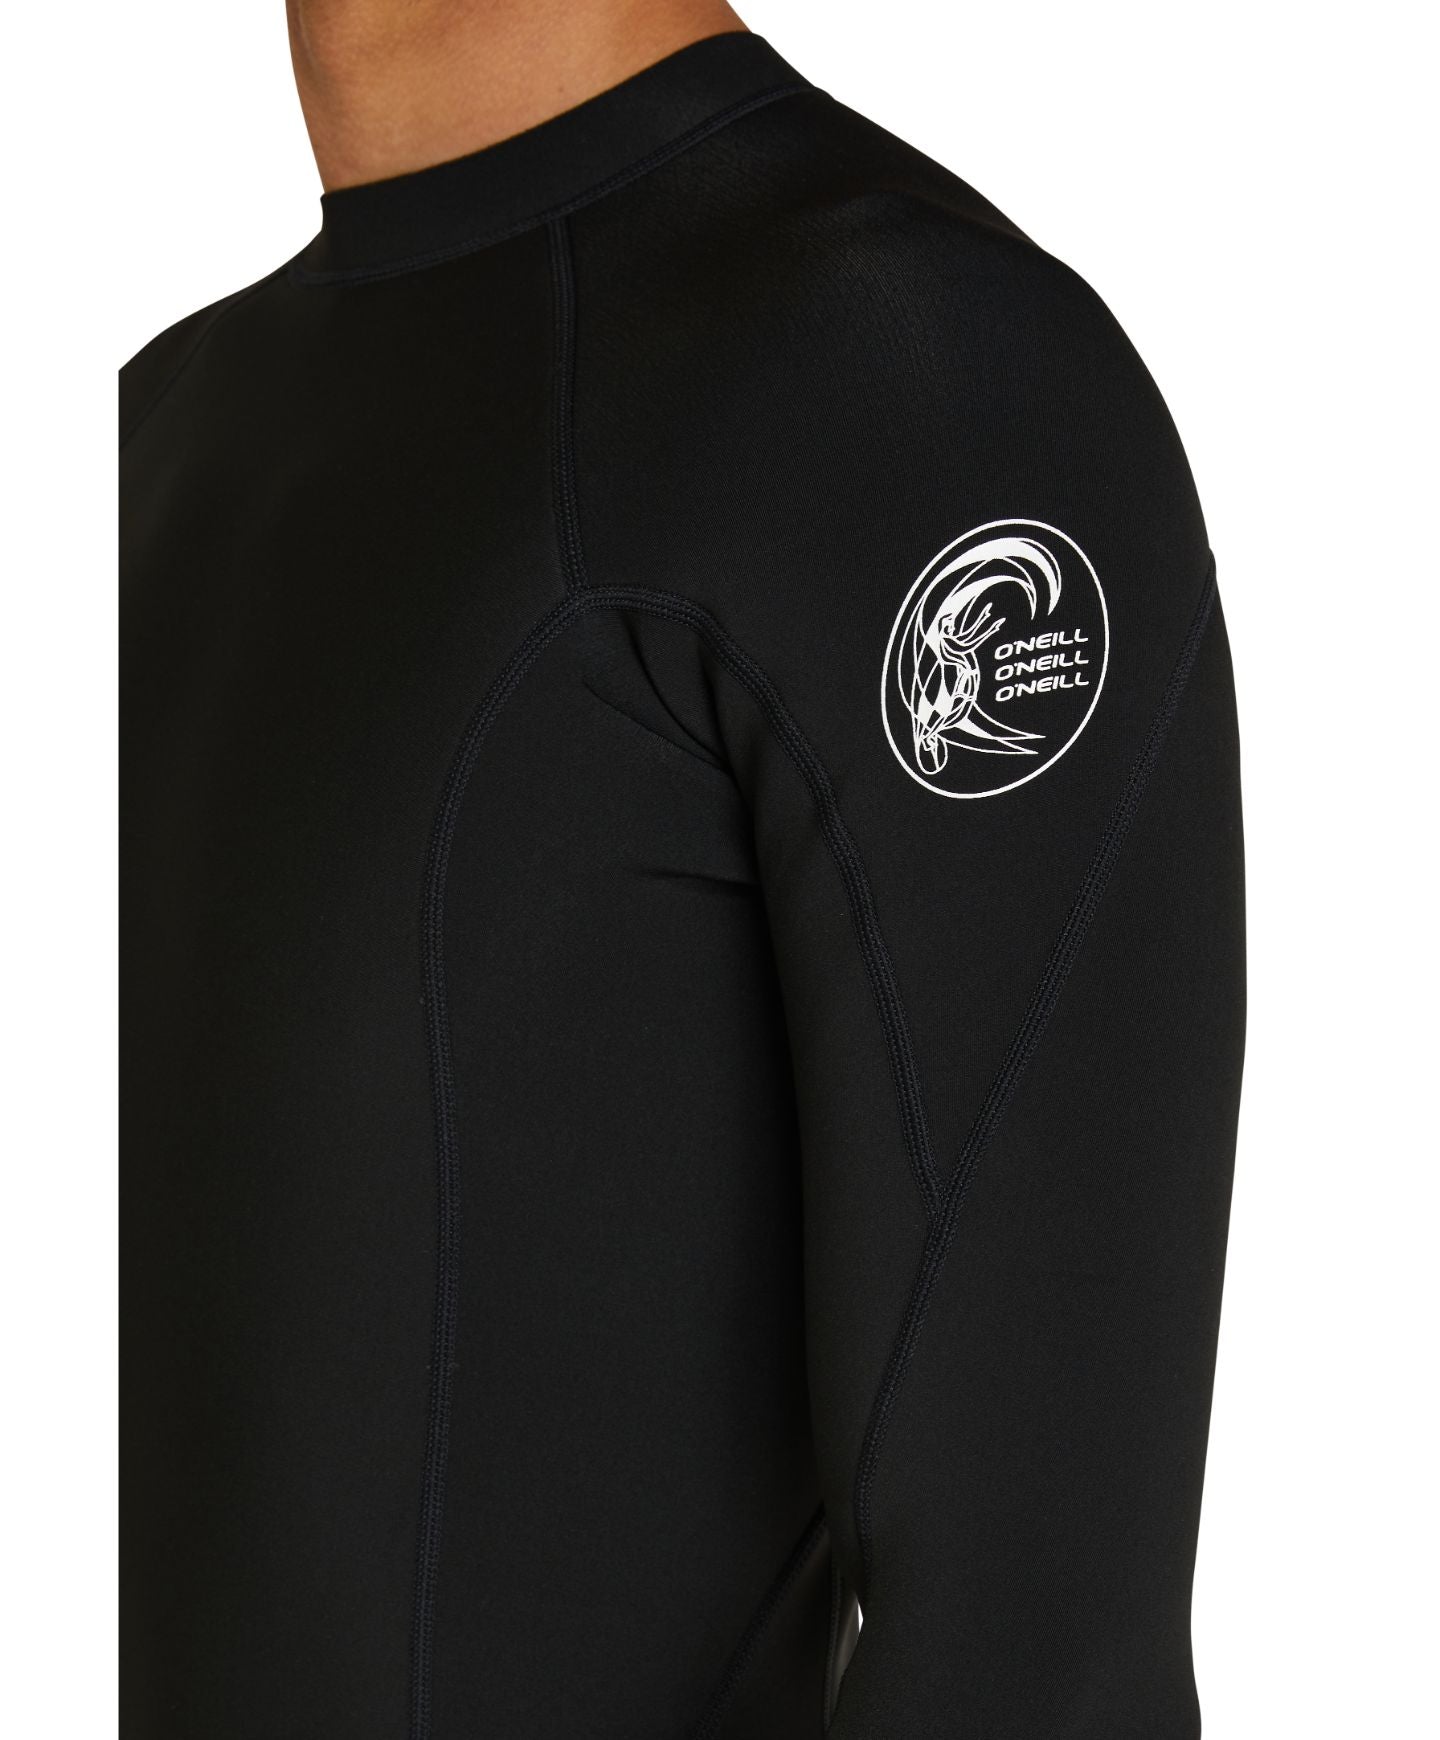 Defender Long Sleeve 2/1mm Wetsuit Jacket - Black